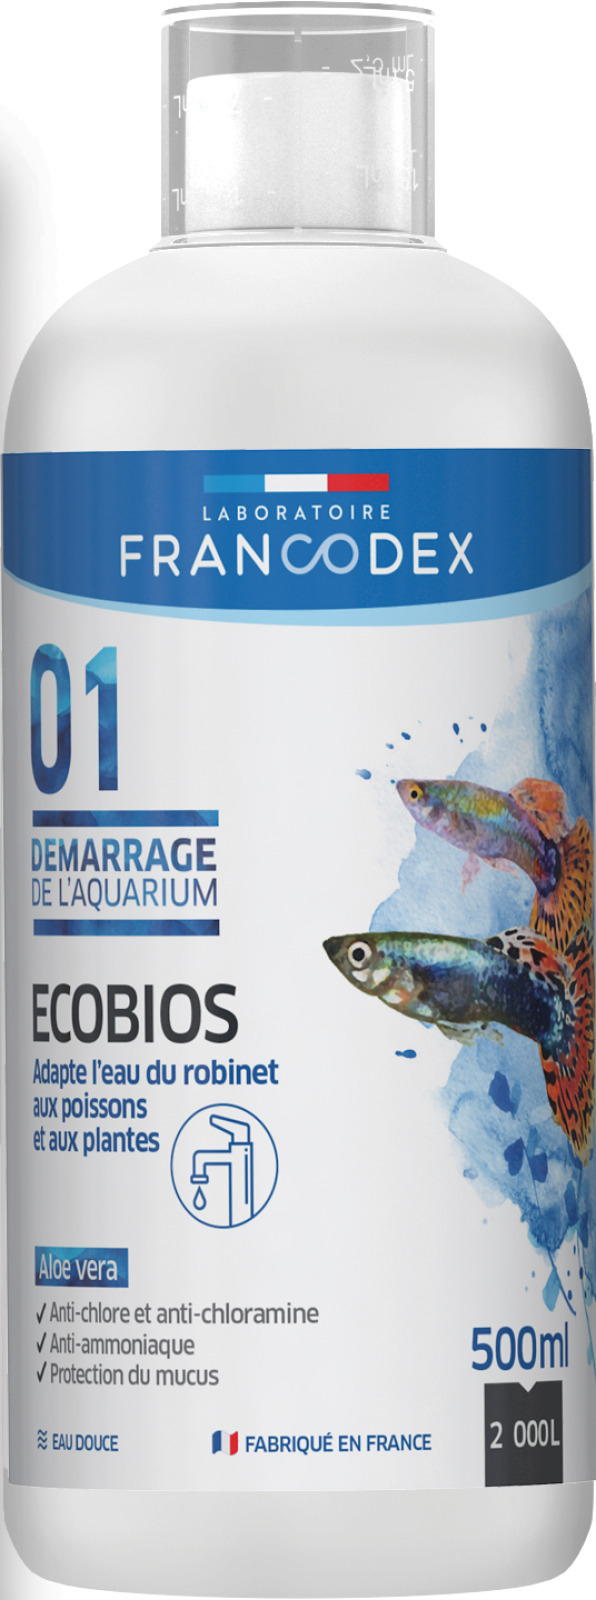 Ecobios conditionneur d'eau FRANCODEX